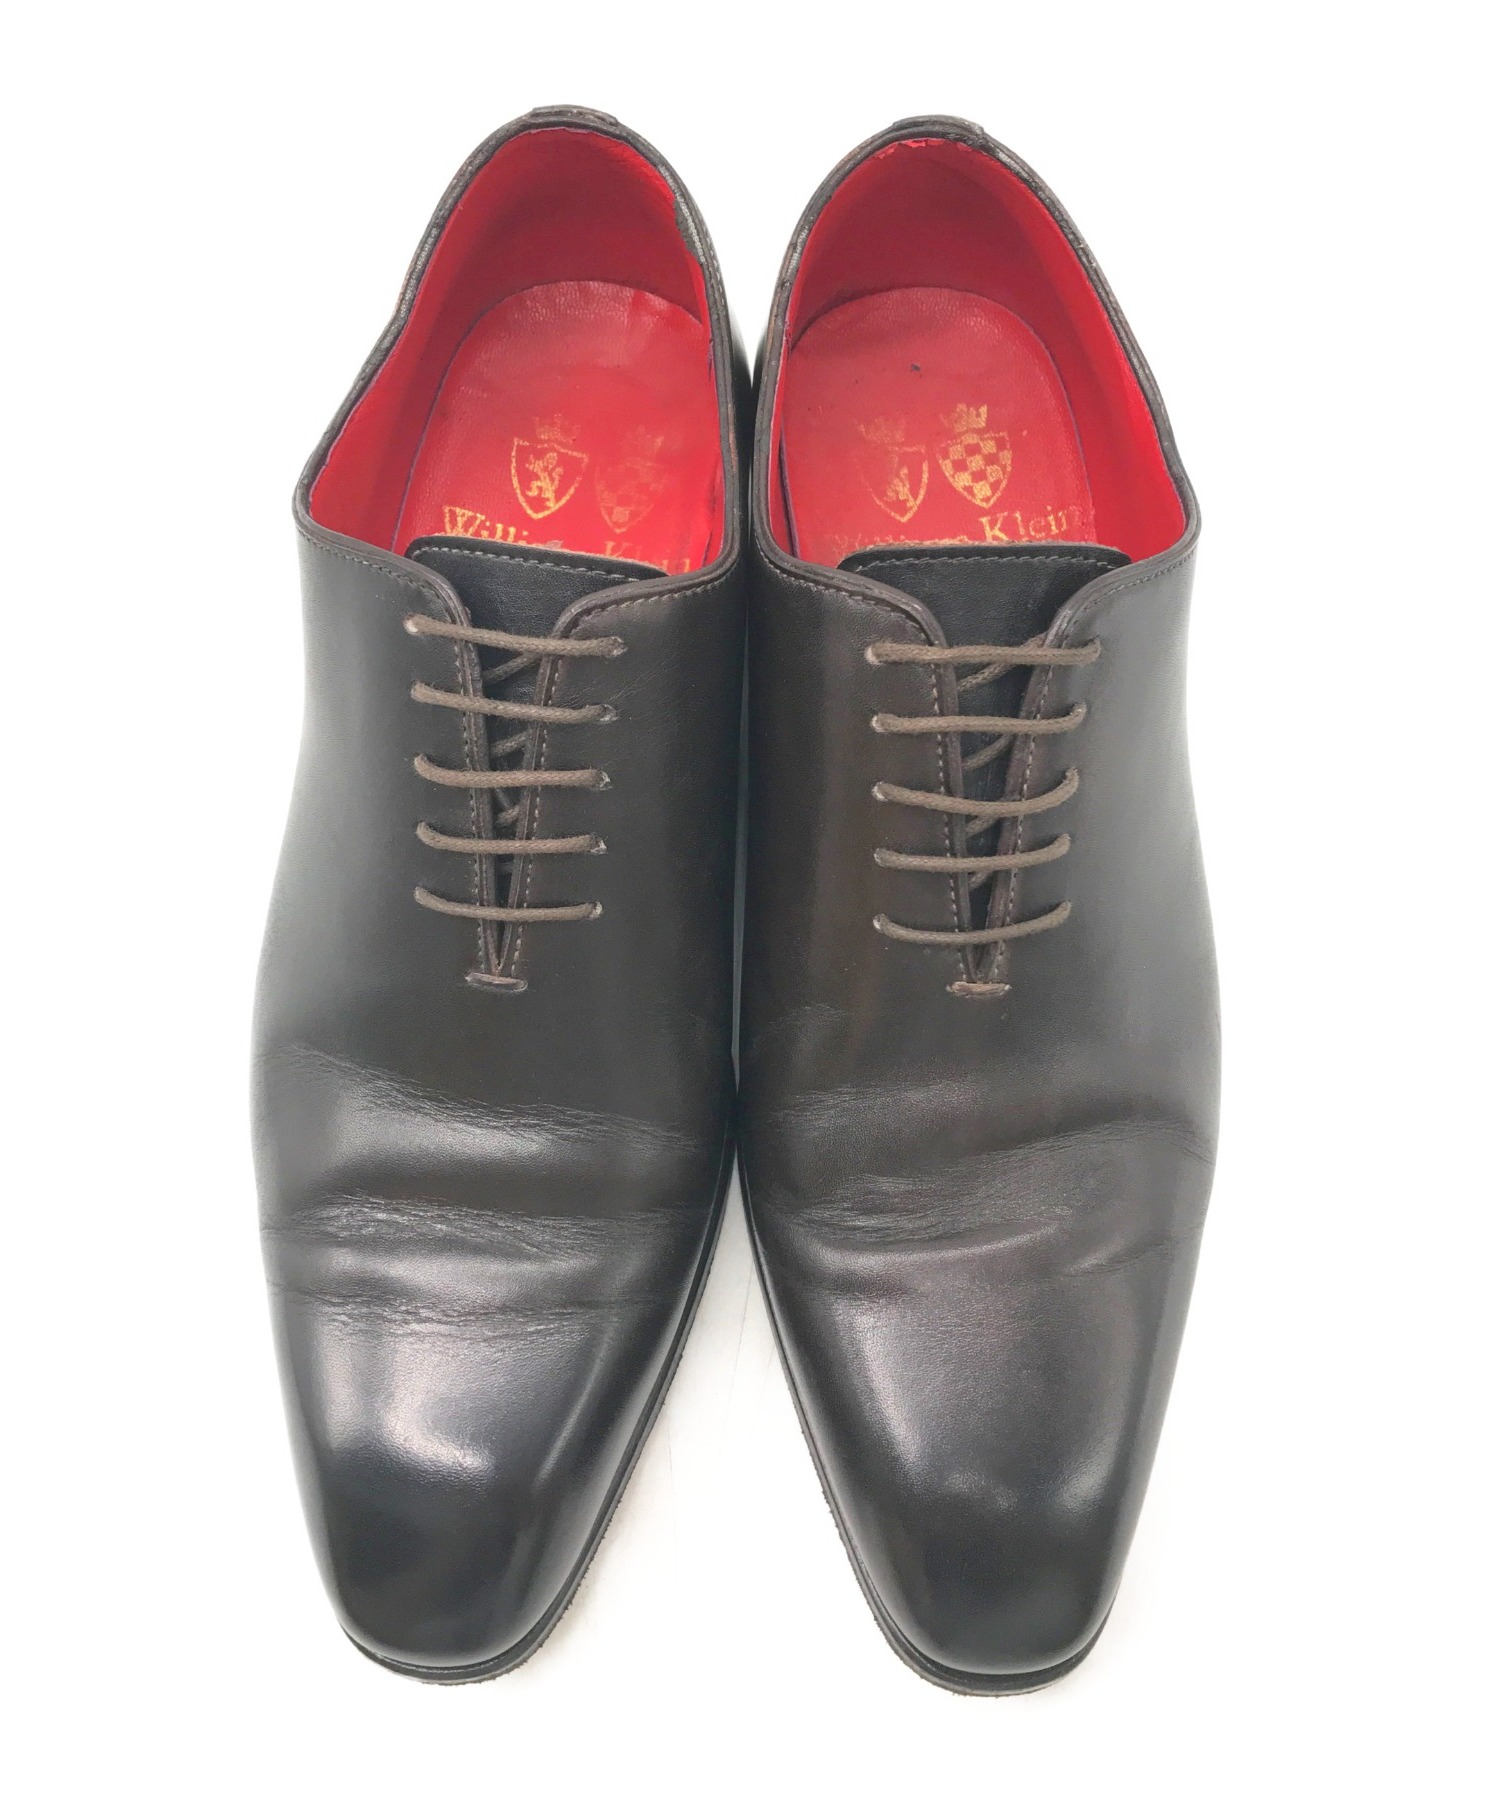 カラーブラック新品未使用✨BERNEYS NEWYORK WILLIAM KLEIN 革靴